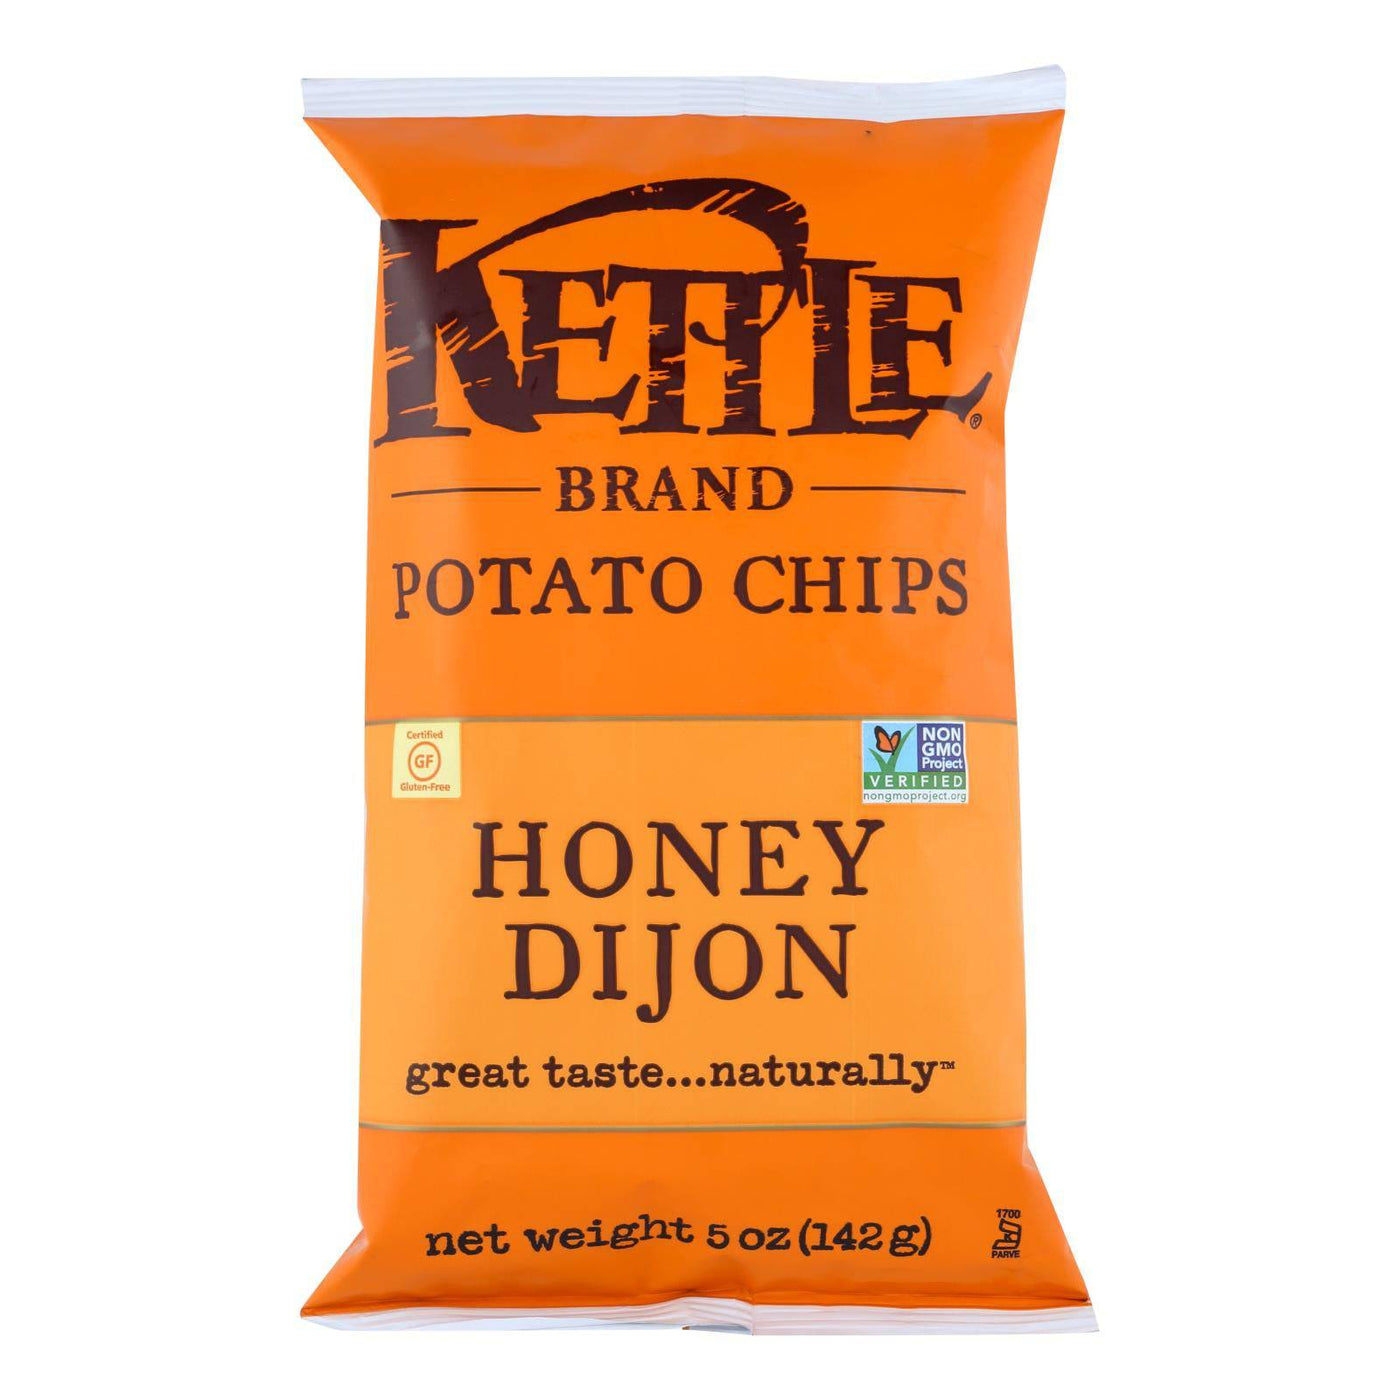 Kettle Brand Potato Chips - Honey Dijon - 5 Oz - Case Of 15 | OnlyNaturals.us